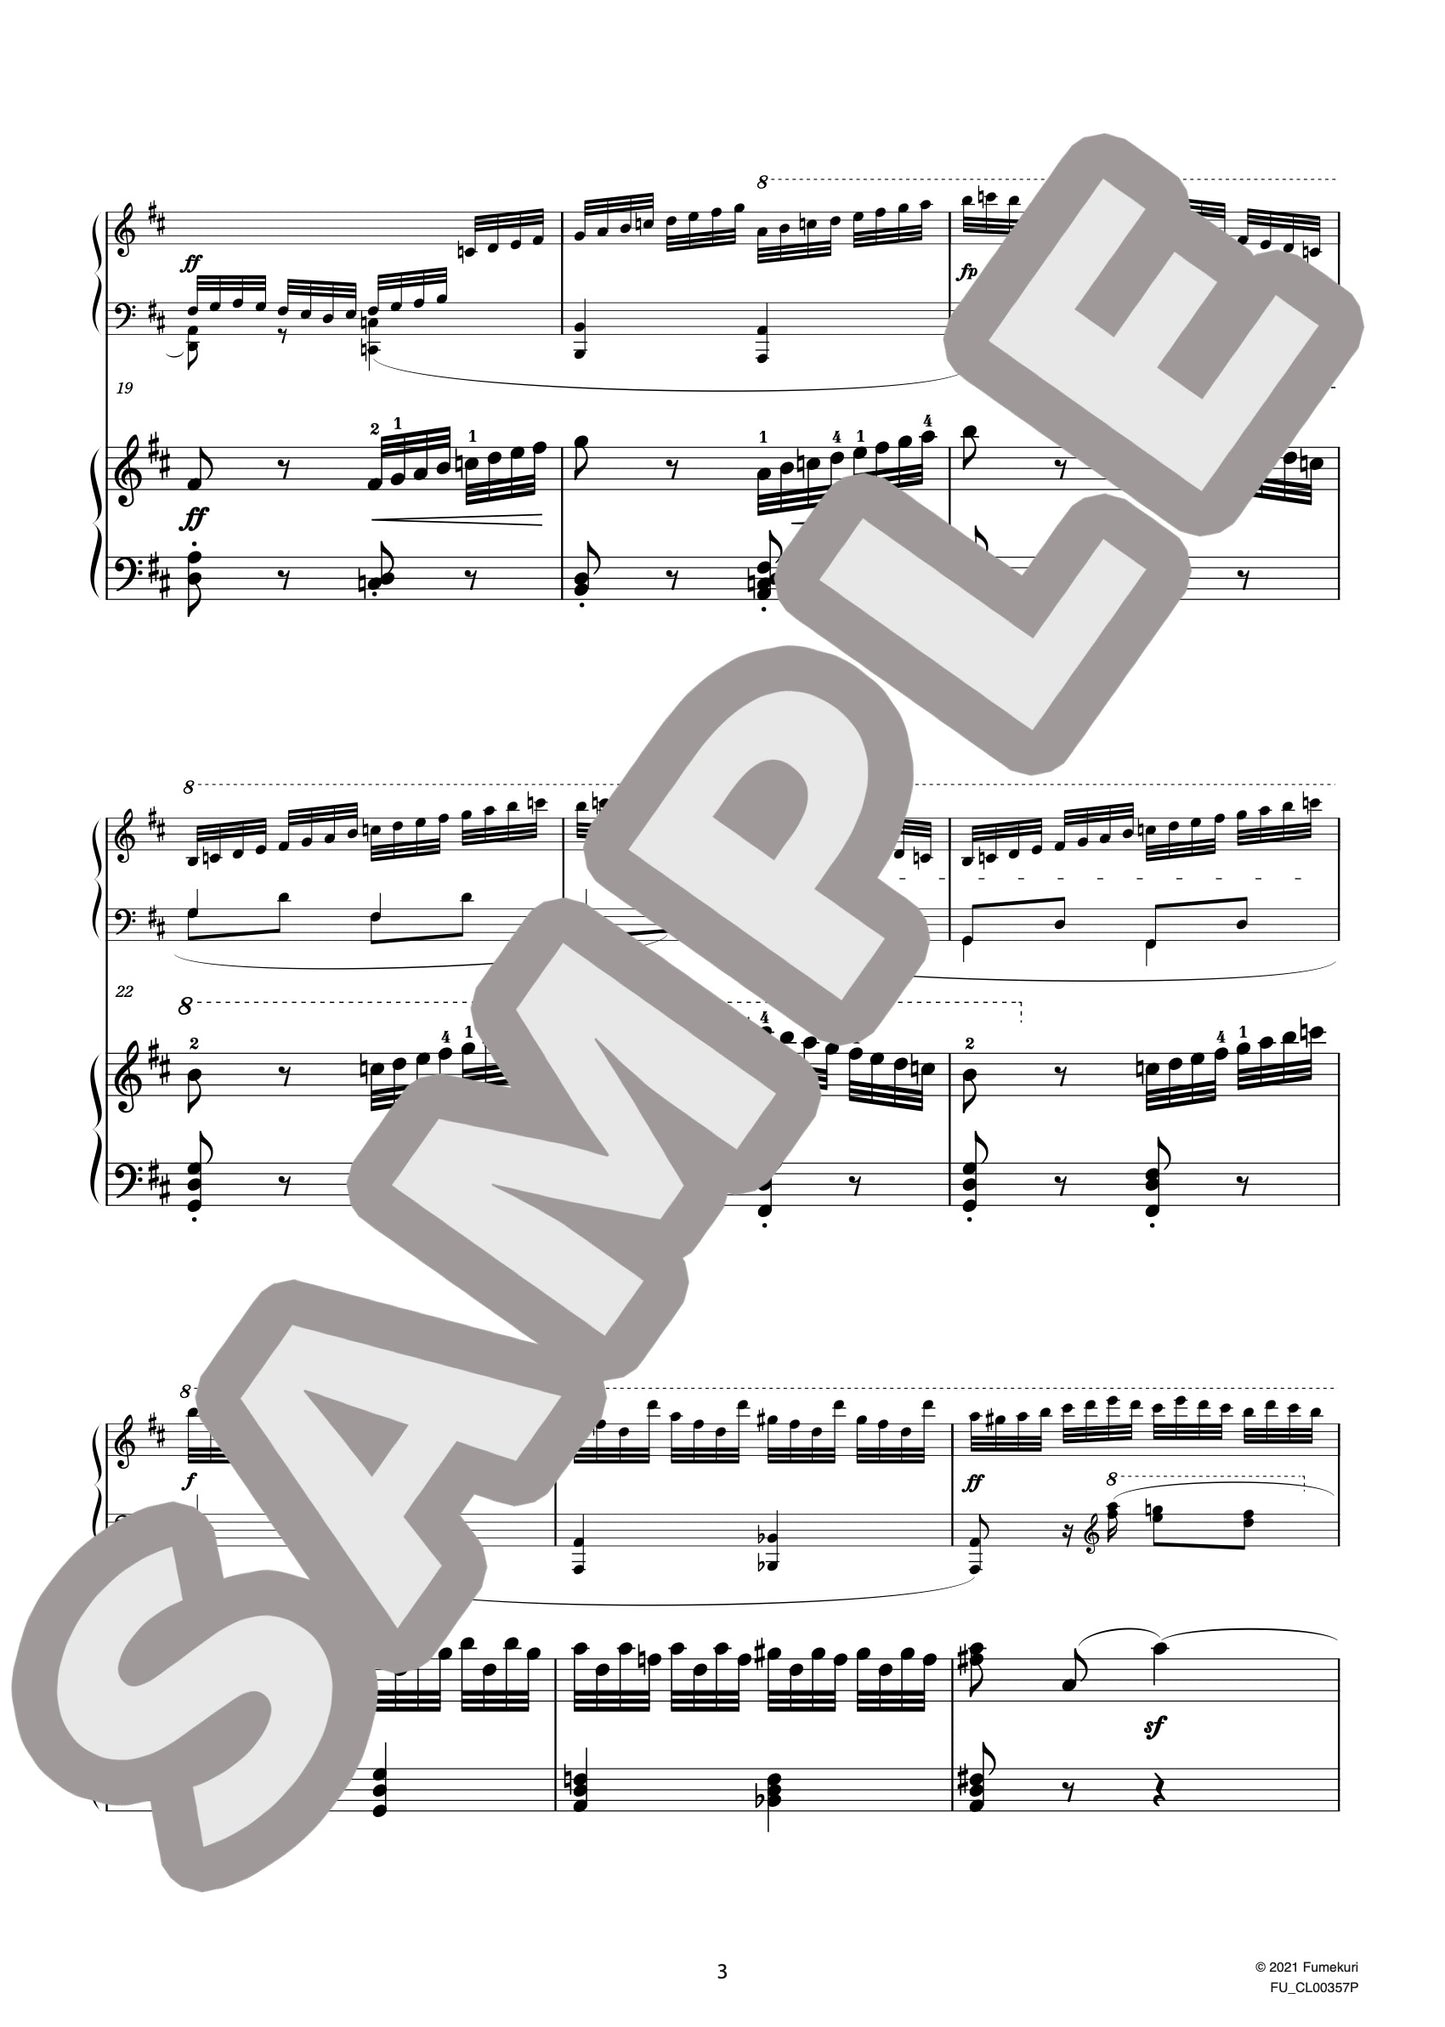 2台のピアノのための速度練習曲（40番練習曲）作品299b 第24番（CZERNY) / クラシック・オリジナル楽曲【中上級】